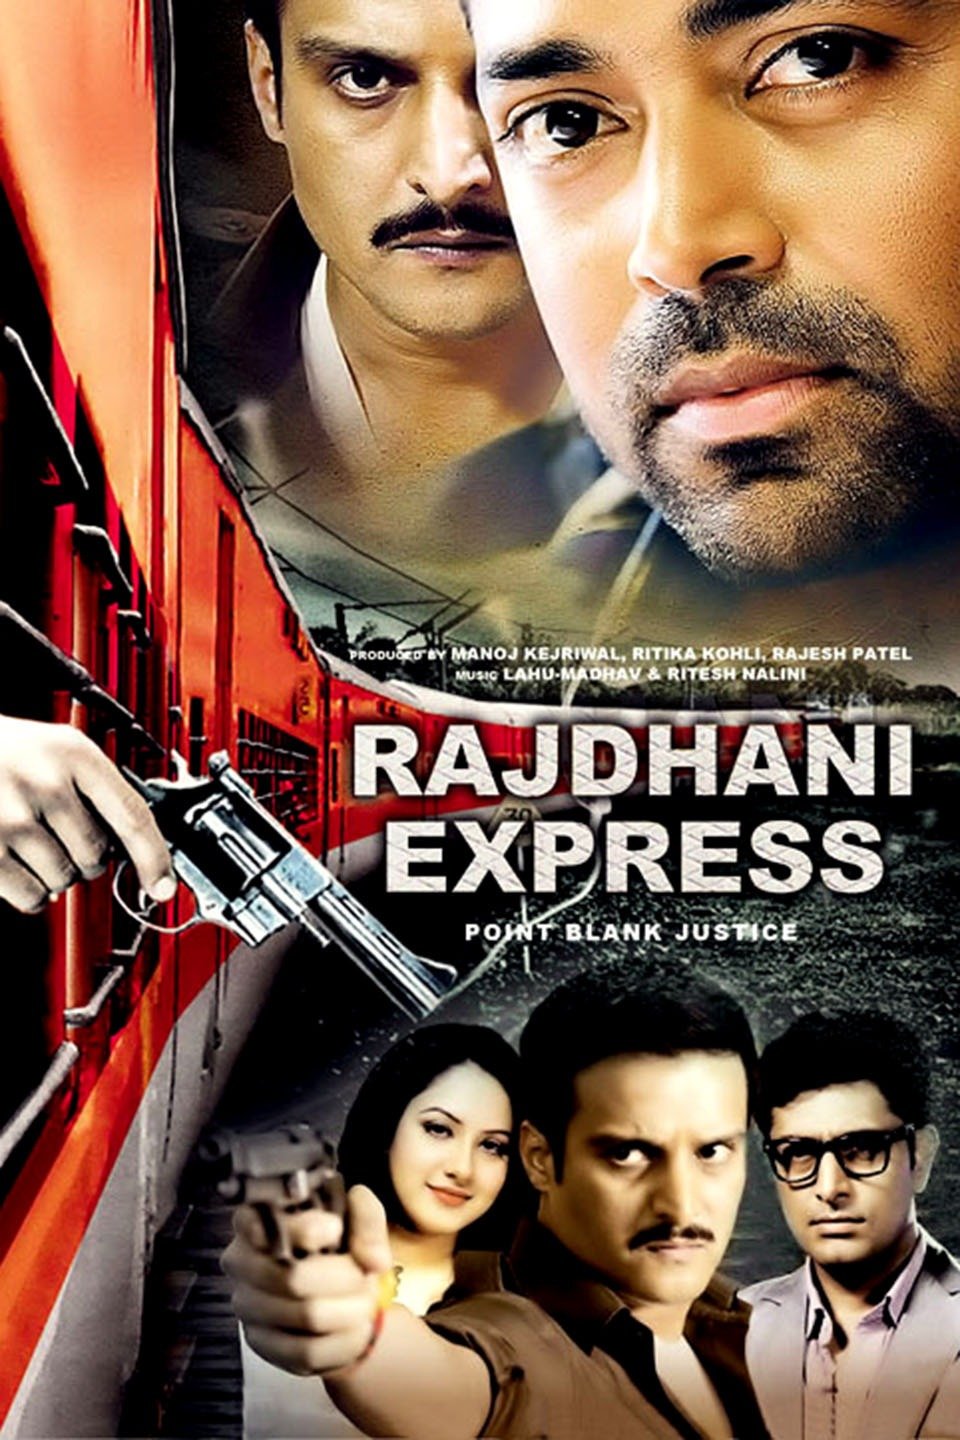 Rajdhani Express 2013 Full Movie Download 720p